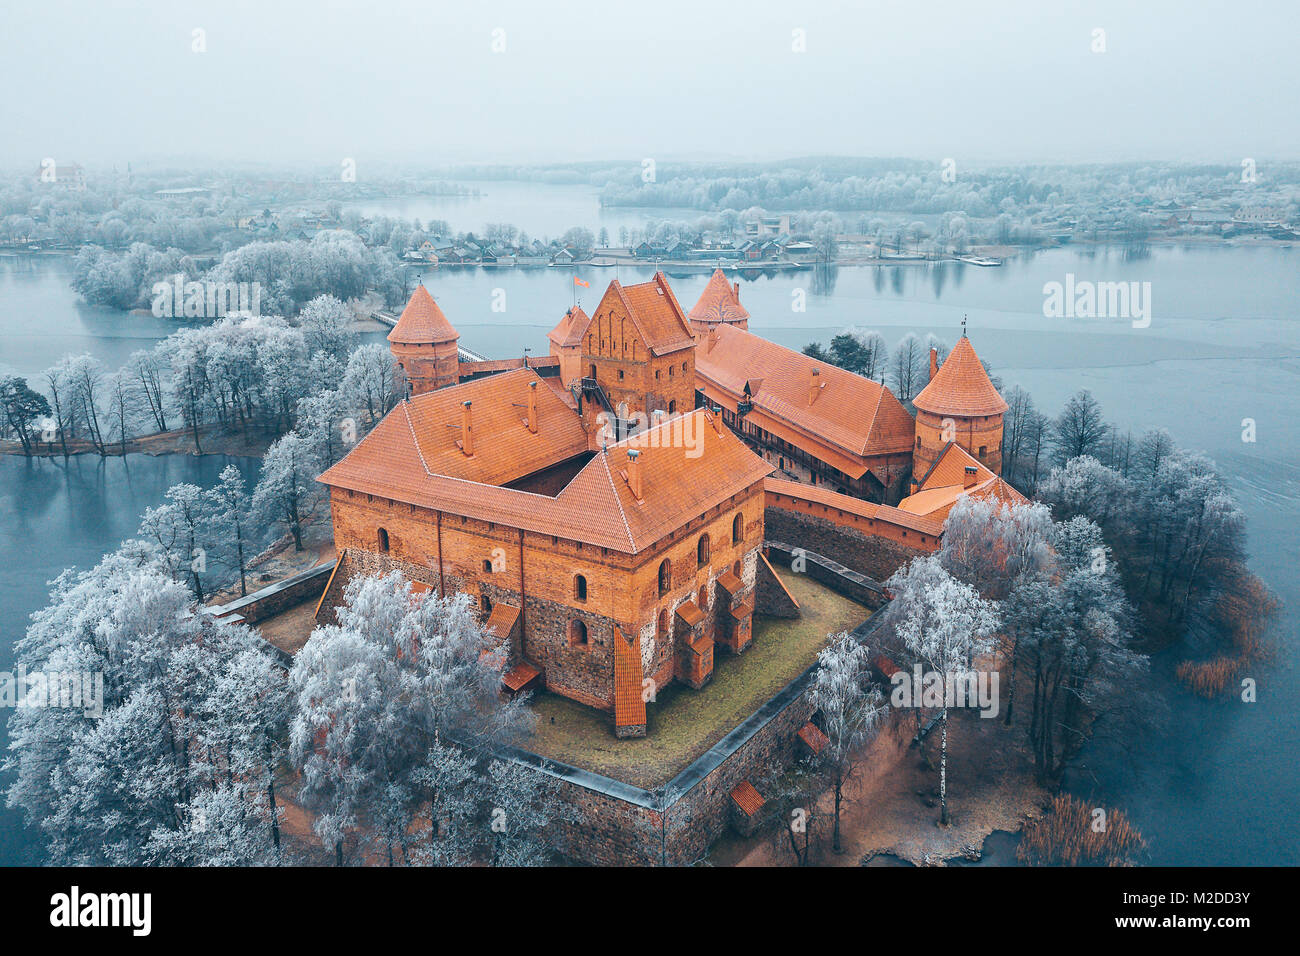 L'île de Trakai Castle, saison d'hiver, vue aérienne. Musée d'histoire. La lituanie en hiver Banque D'Images